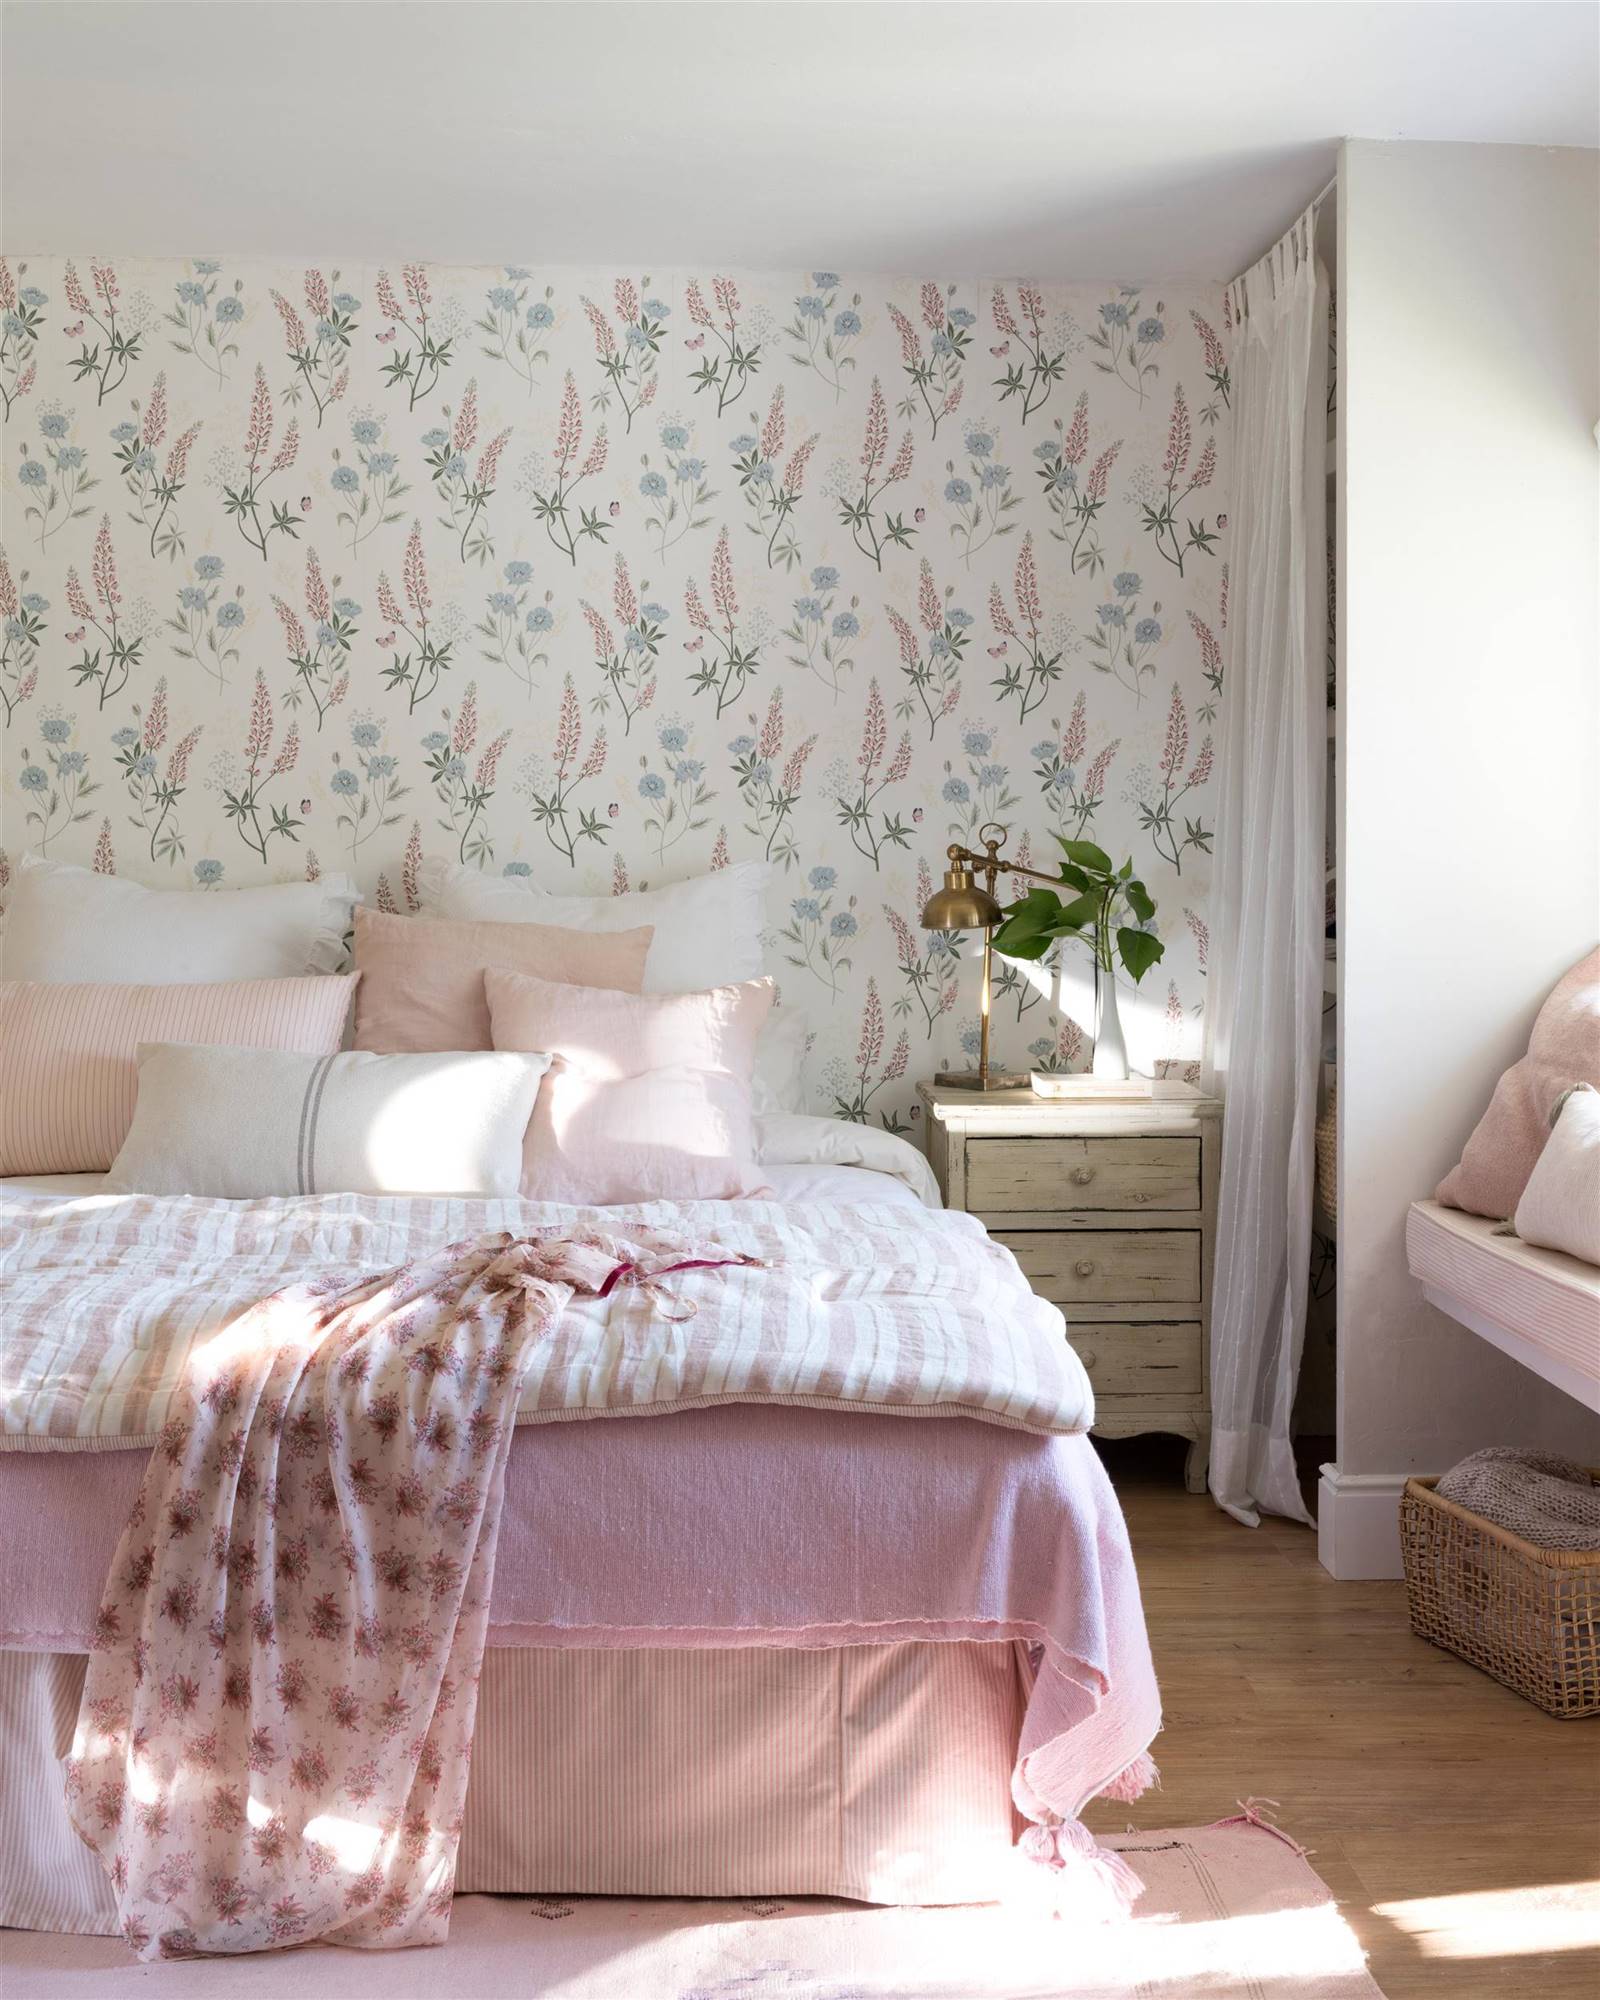 Dormitorio decorado con papel pintado floral en tonos rosas 00527806